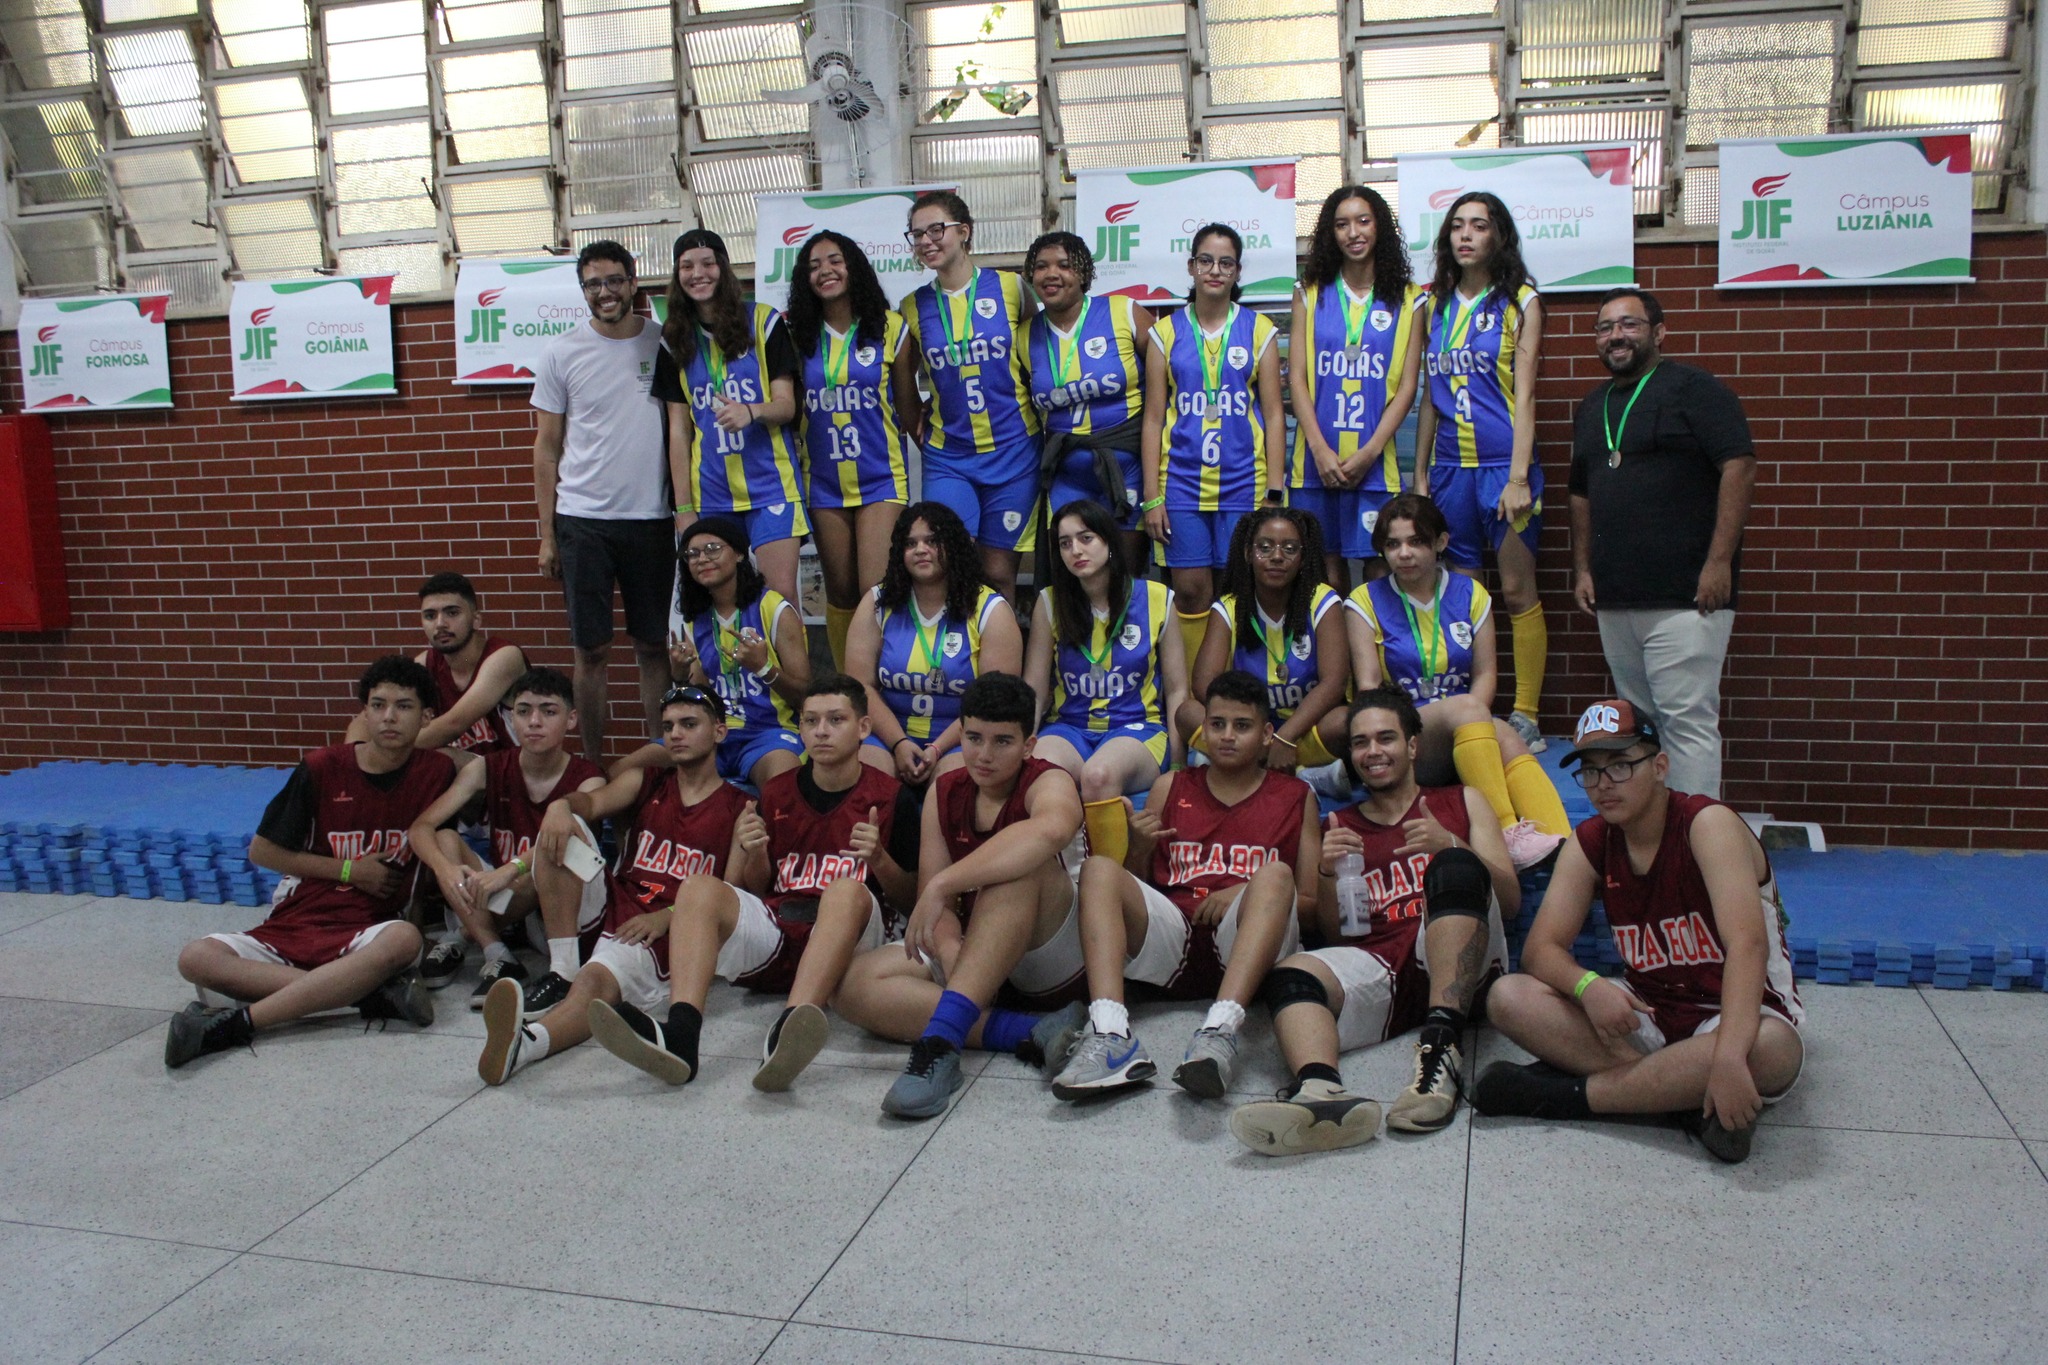 Equipe da Cidade de Goiás que foi aos jogos. Basquete masculino e feminino